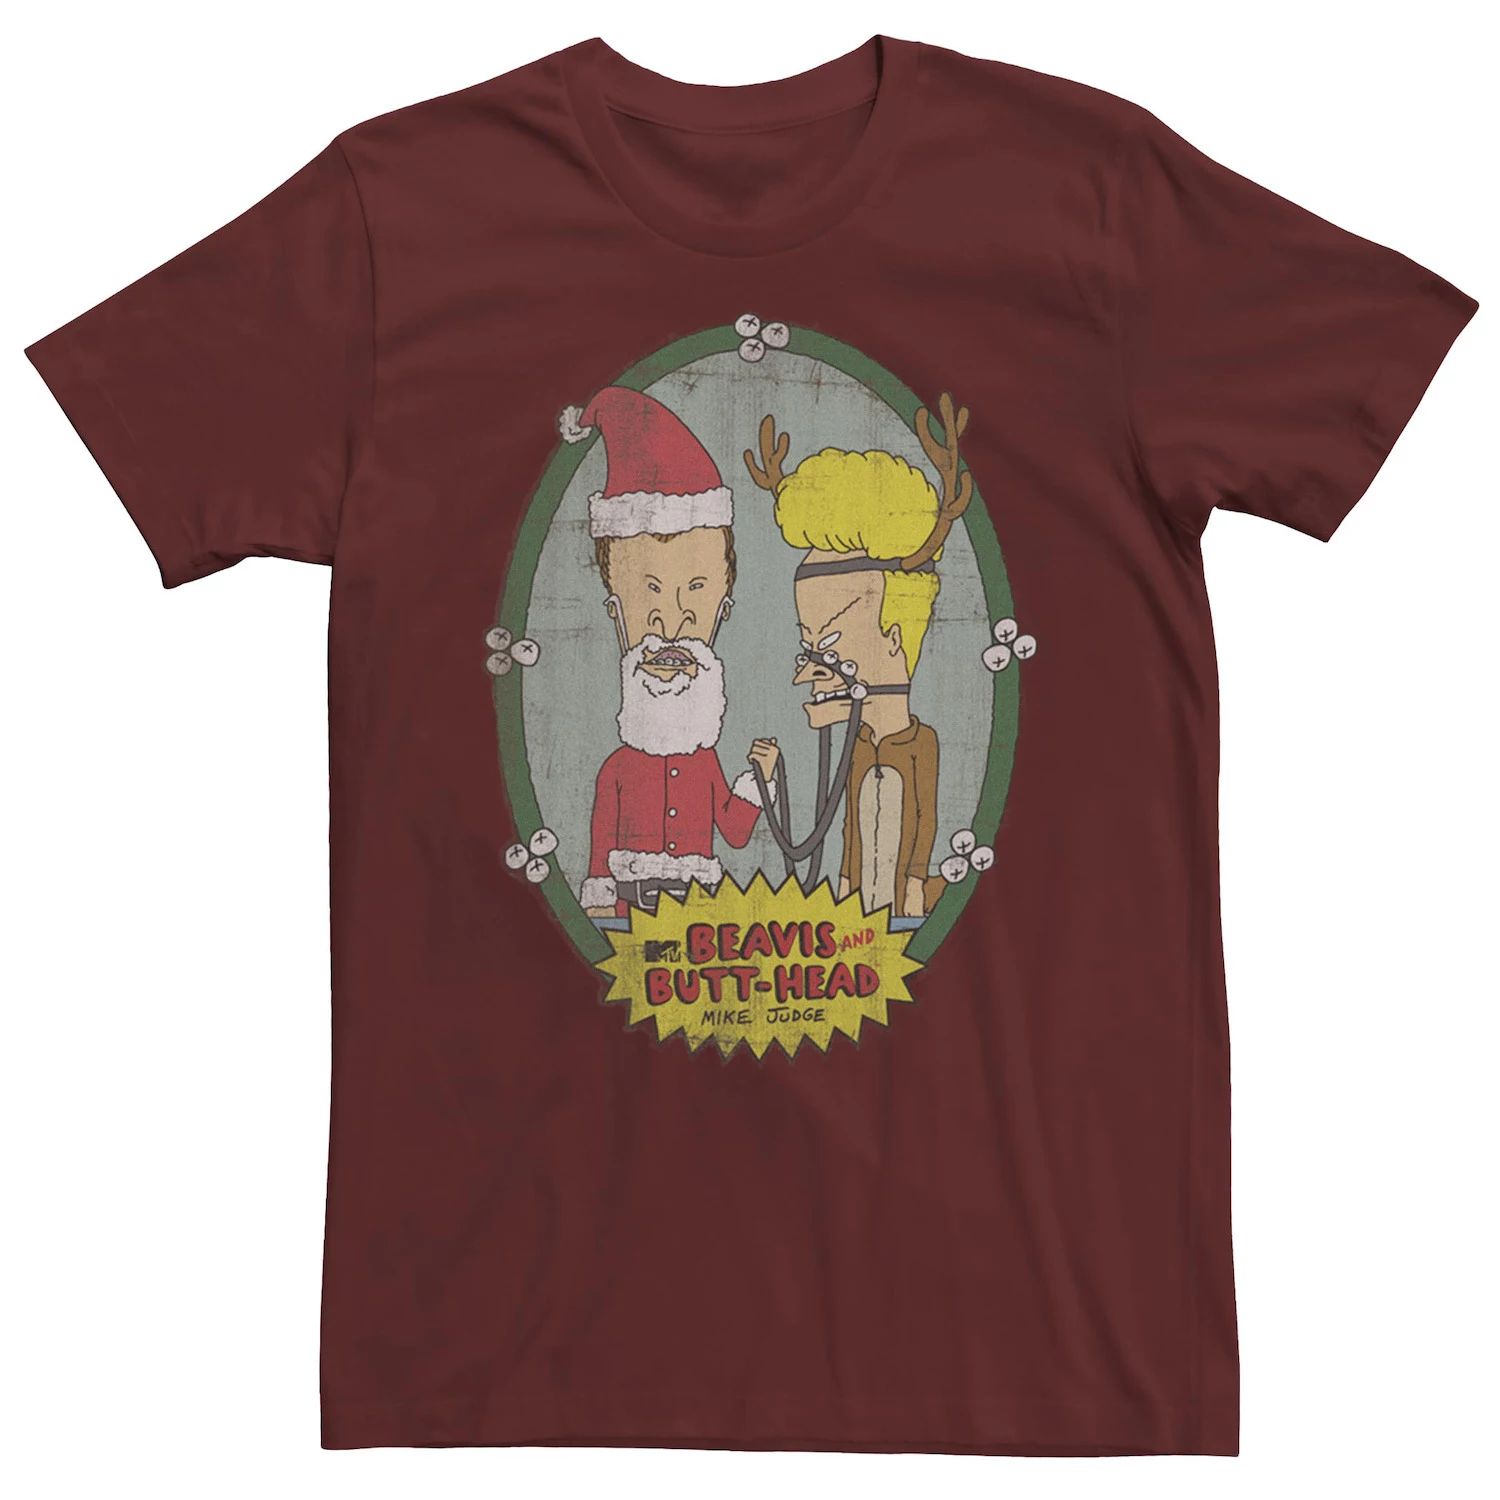 Мужская футболка с рождественским портретом Бивис и Баттхед Licensed Character